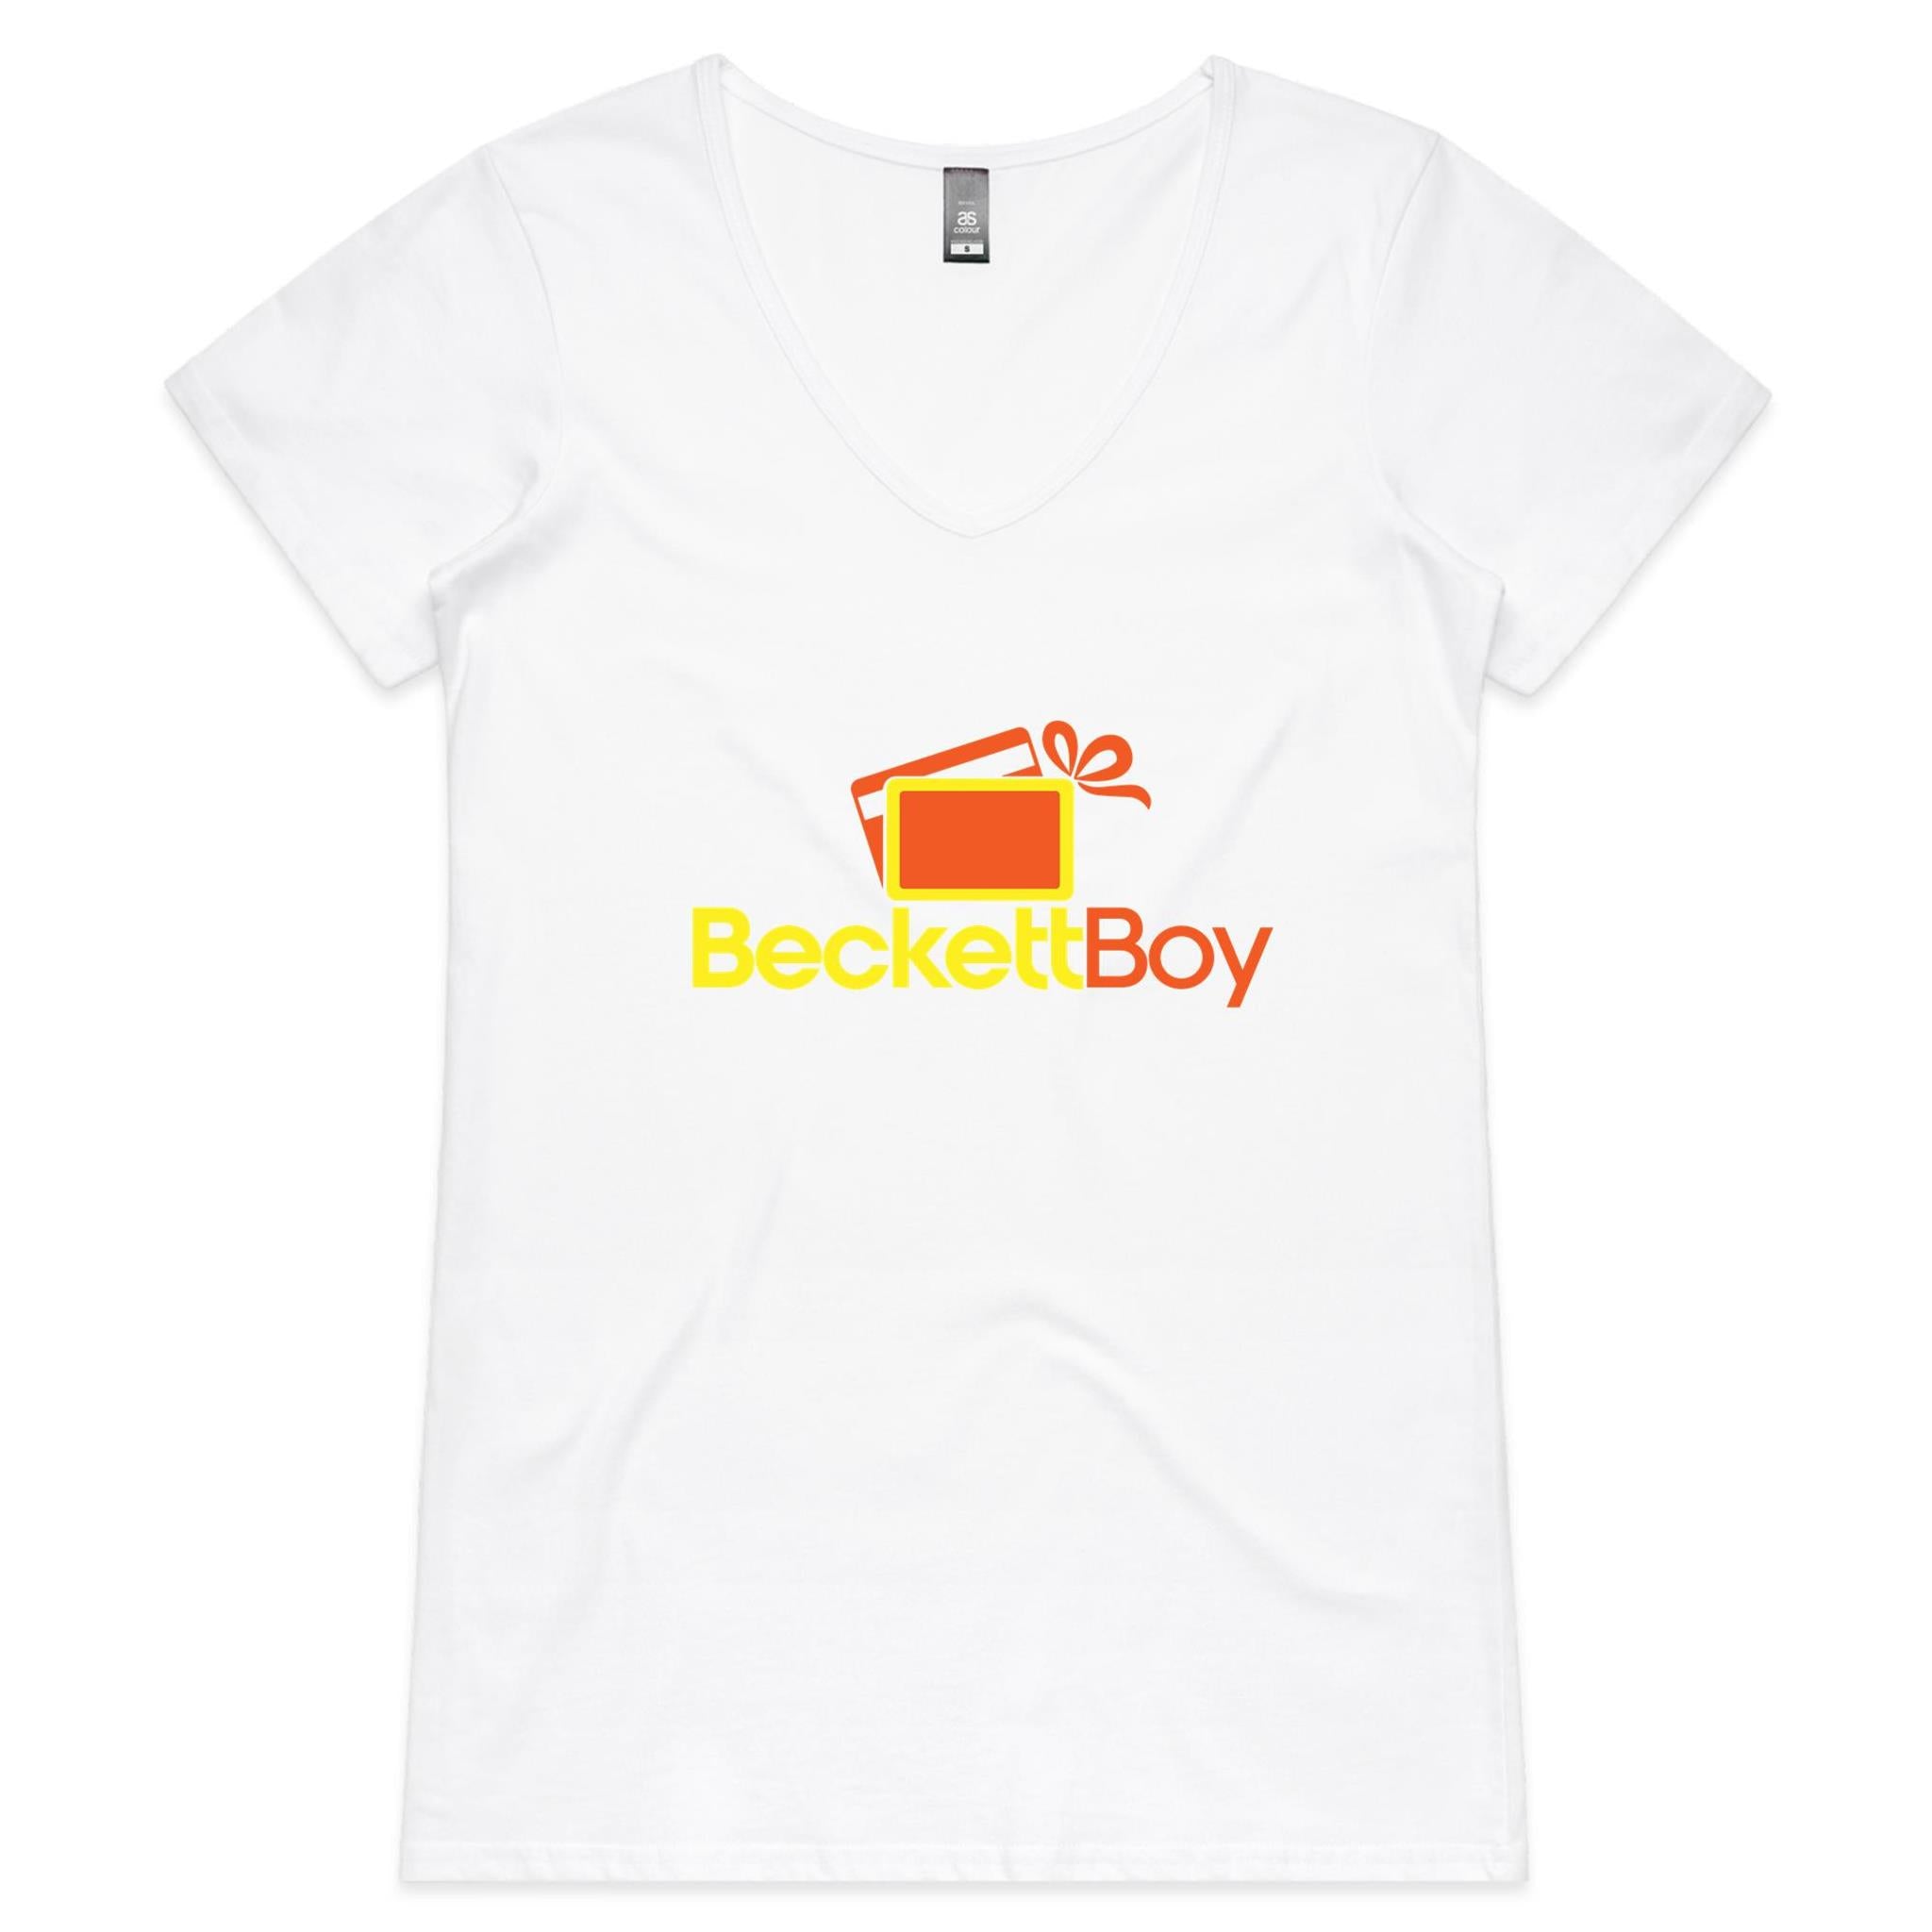 Beckett Boy Womens V-Neck T-Shirt | Women's V-Neck Tee Shirt